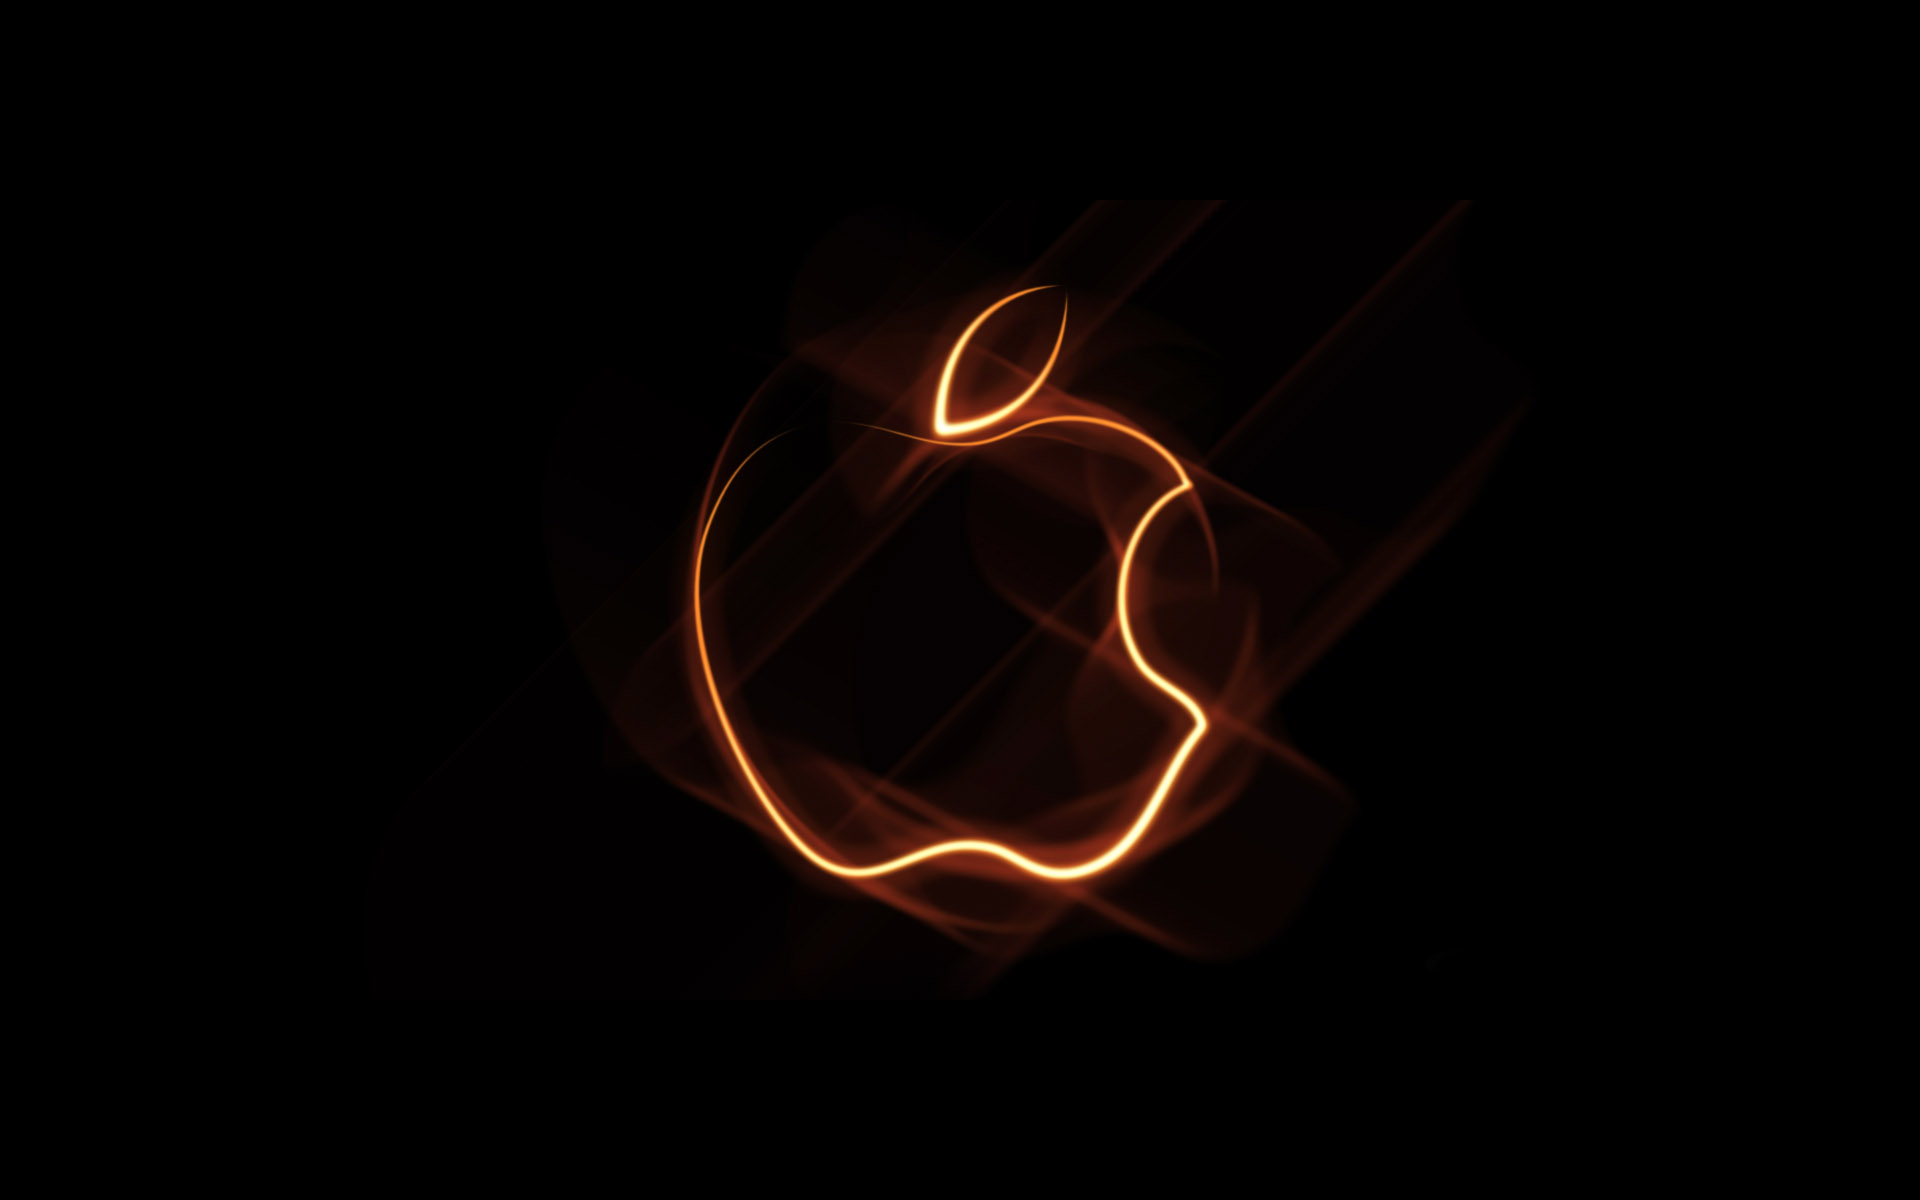 75+] Cool Apple Logo Wallpaper - WallpaperSafari